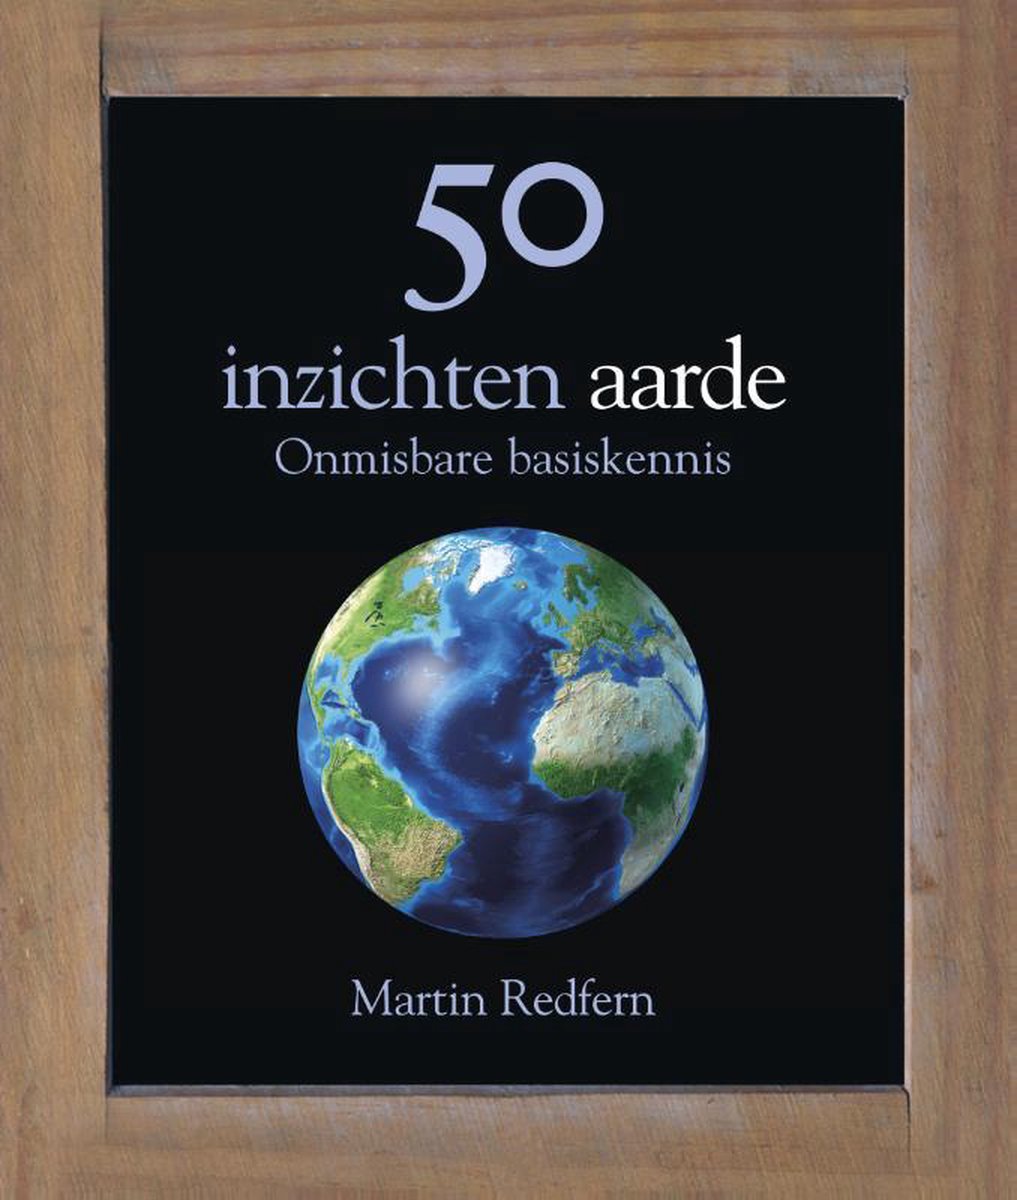 50 inzichten aarde - Martin Redfern